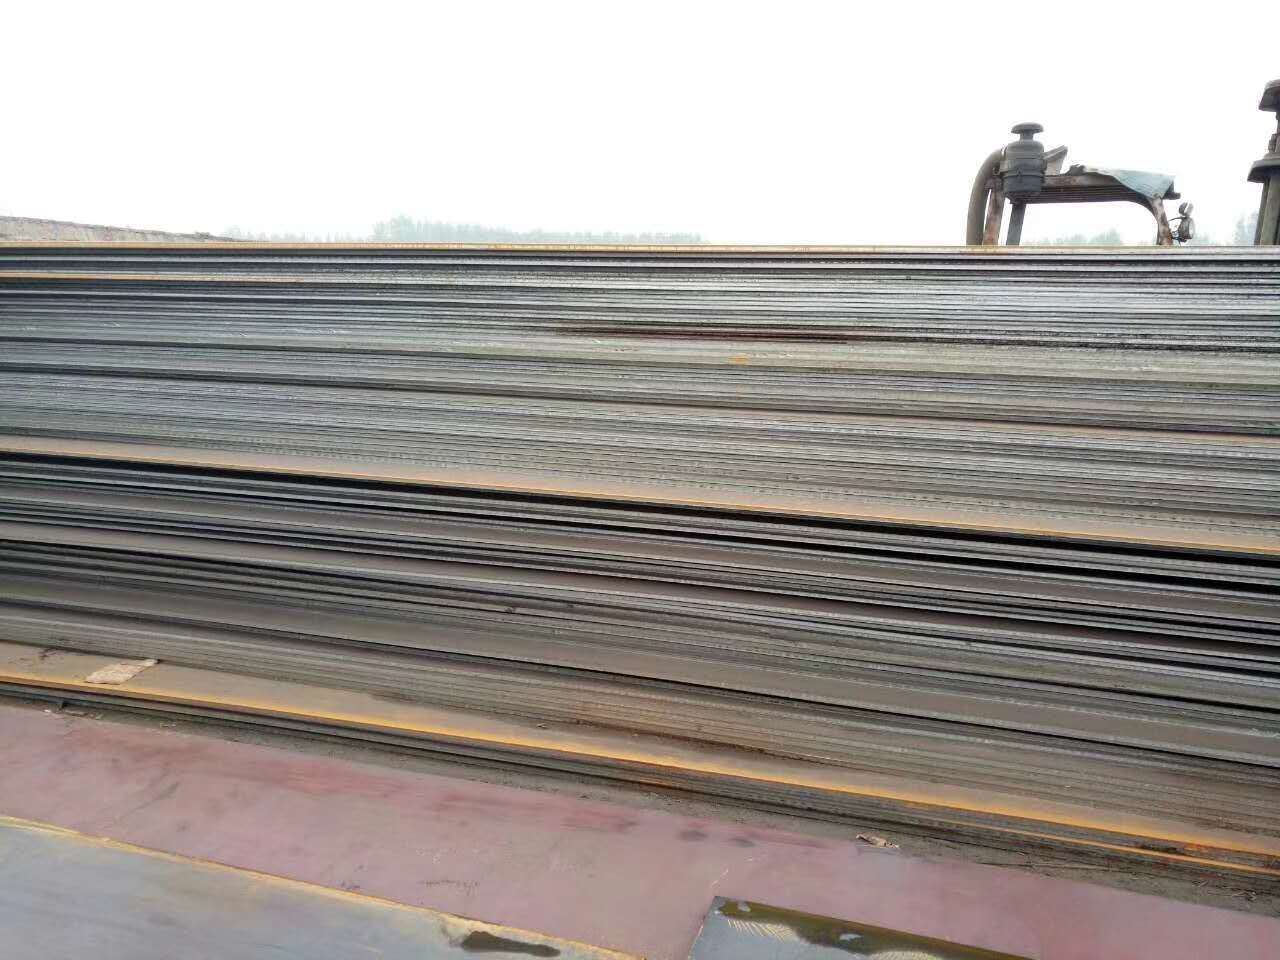 Placa de acero al carbono laminado en caliente ASTM A36